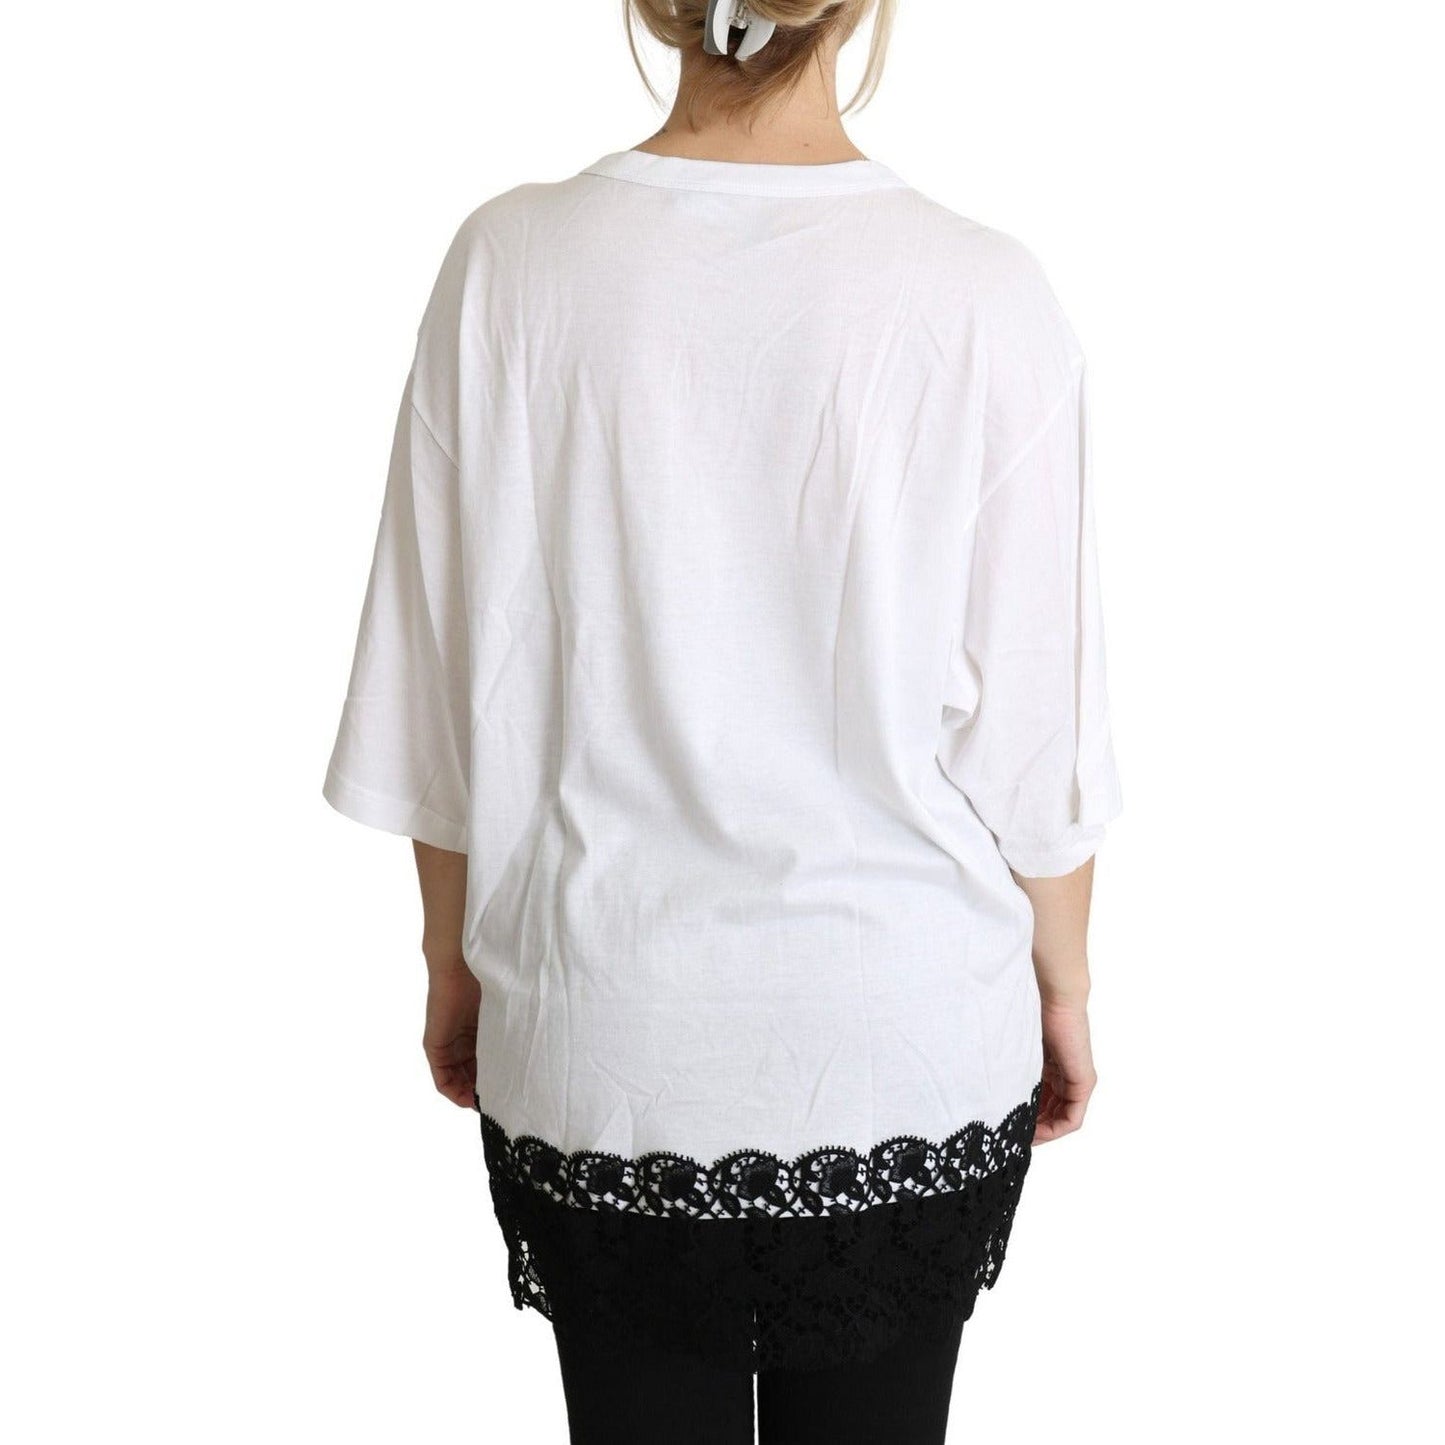 Dolce & Gabbana Elegant White Cotton Blend T-Shirt white-angel-print-cotton-round-neck-shirt-tops